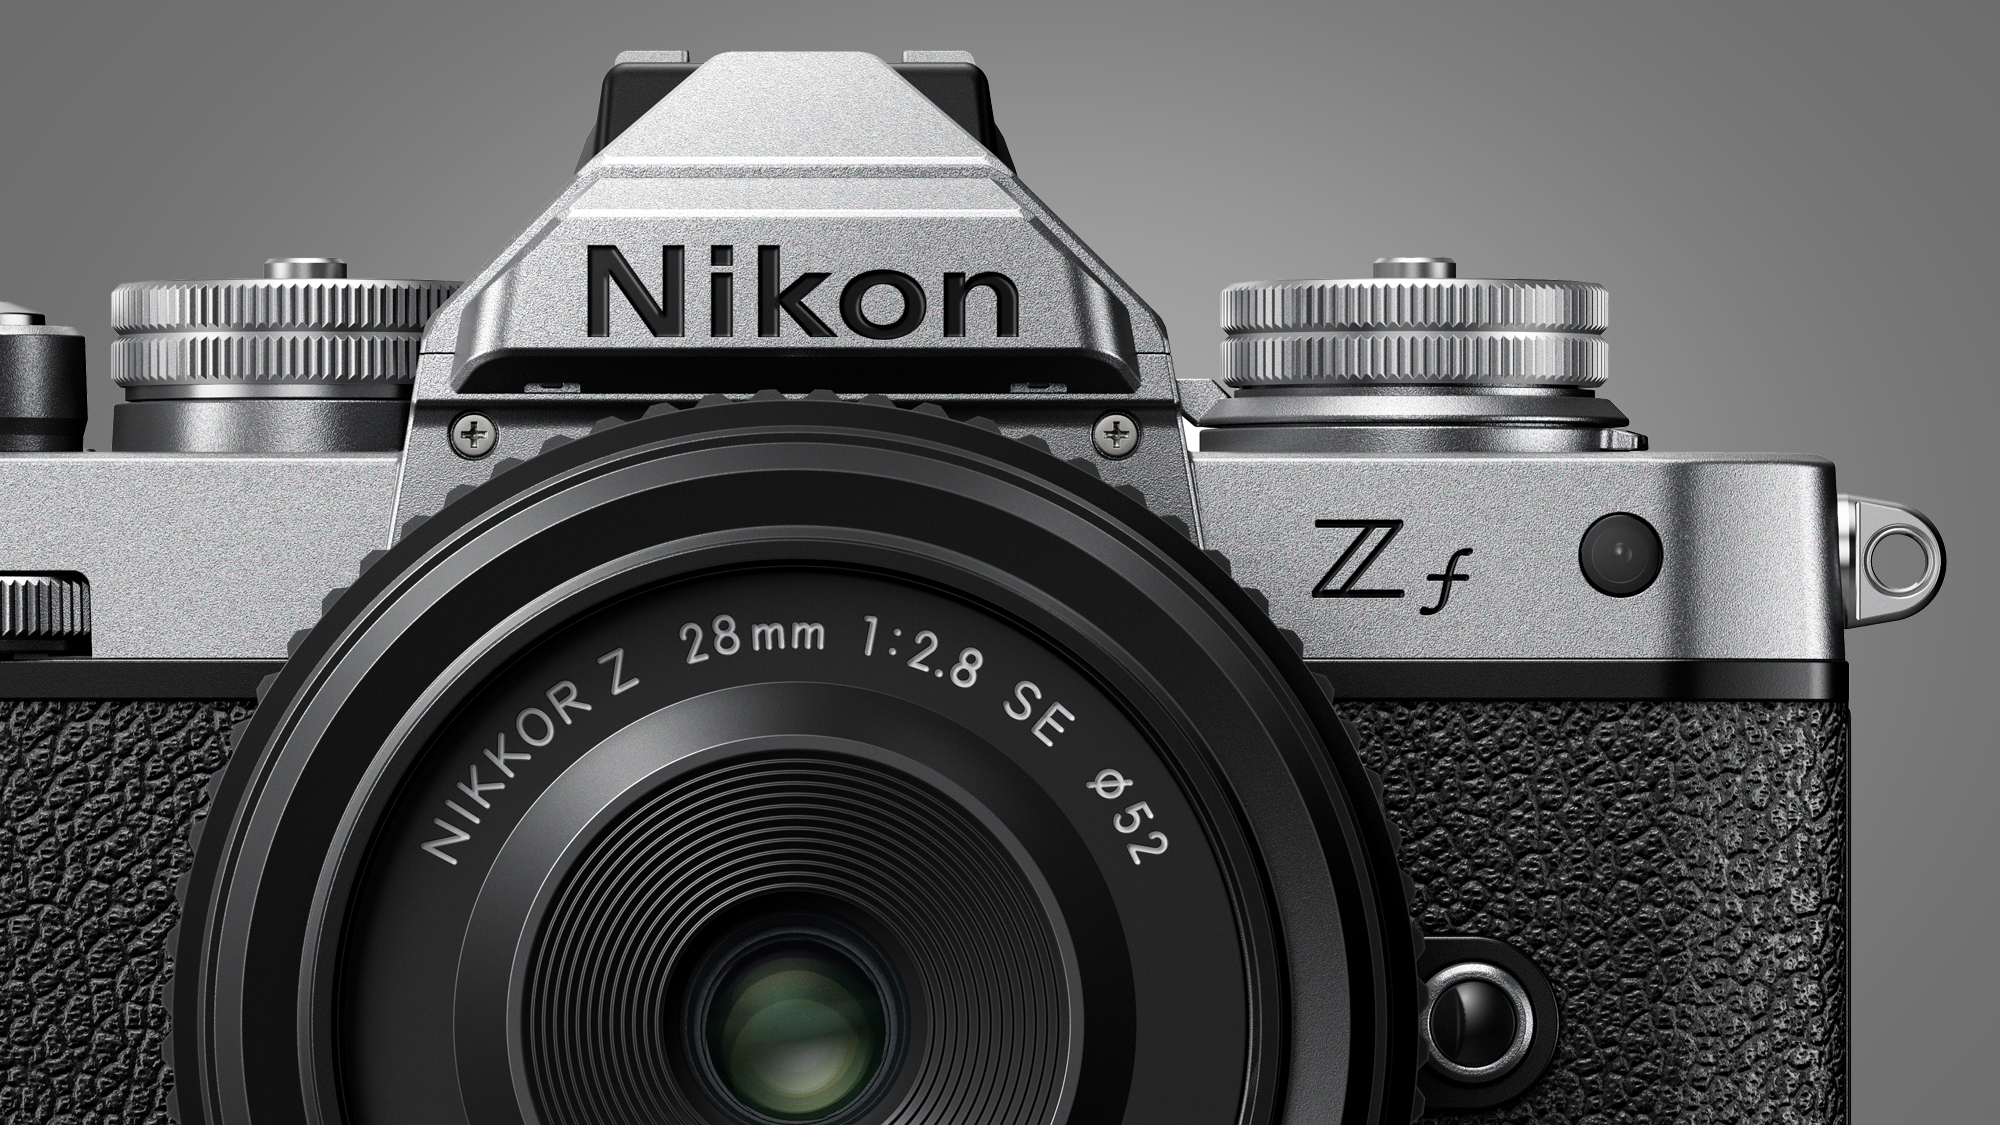 The Nikon Z fc camera on a grey background